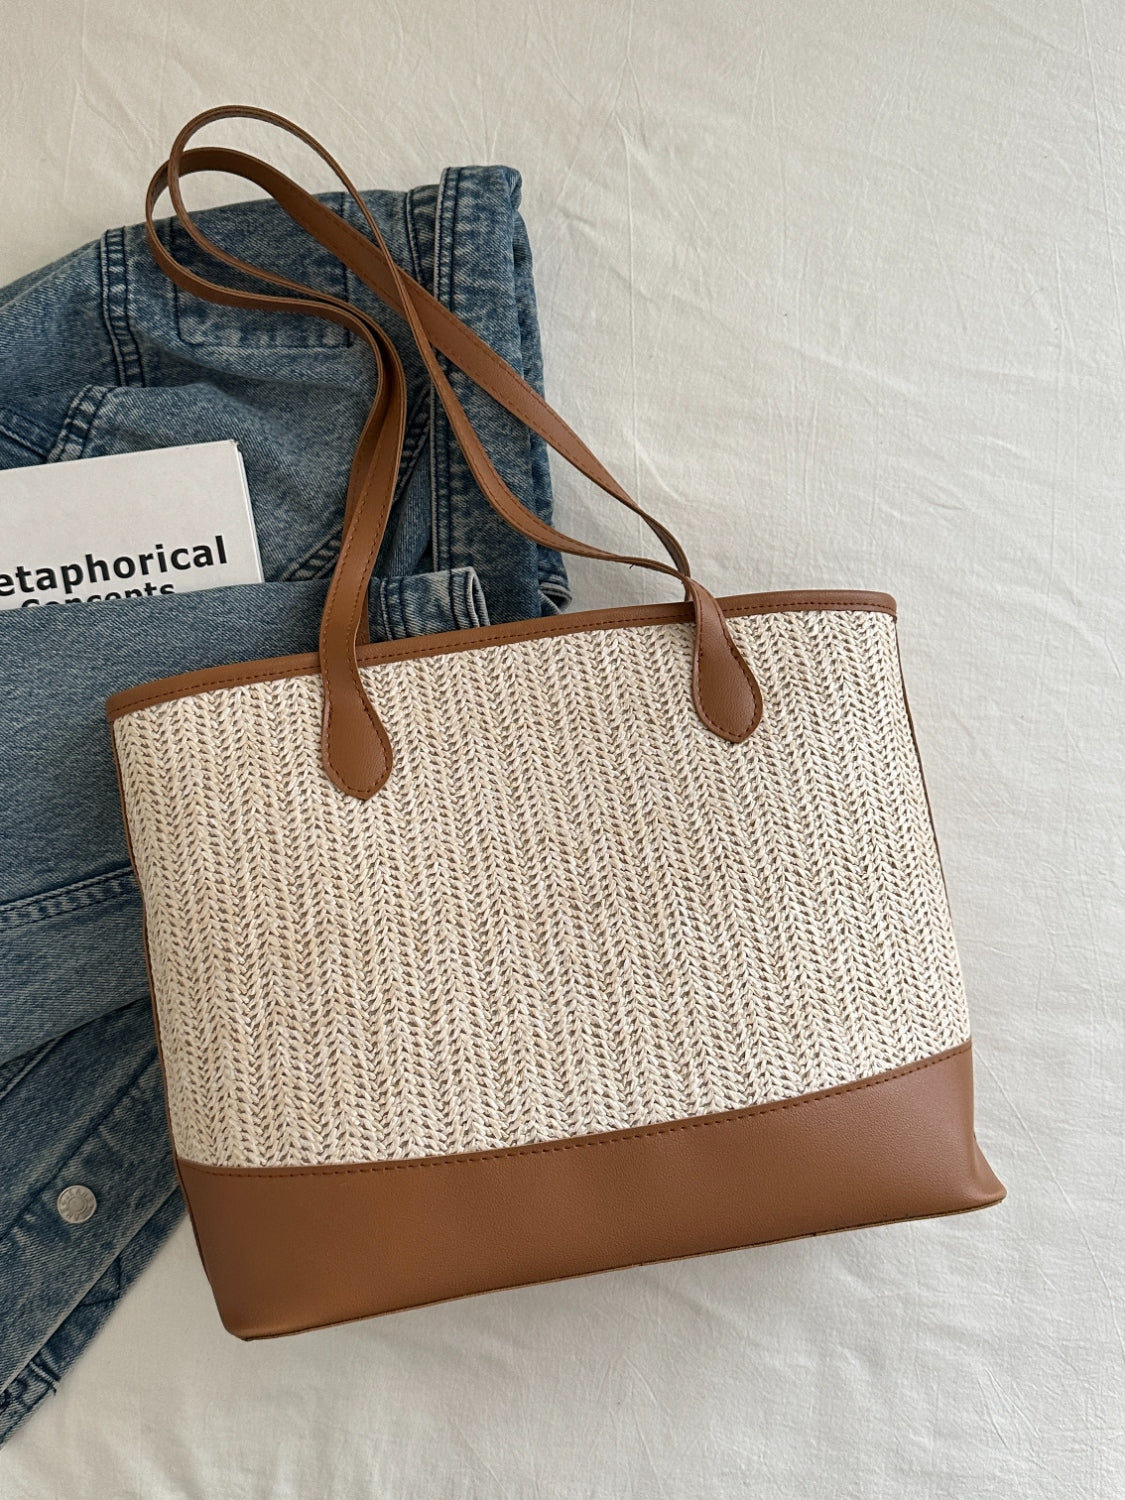 Contrast Straw Woven Tote Bag - Fashion BTQ -  - Fashion BTQ